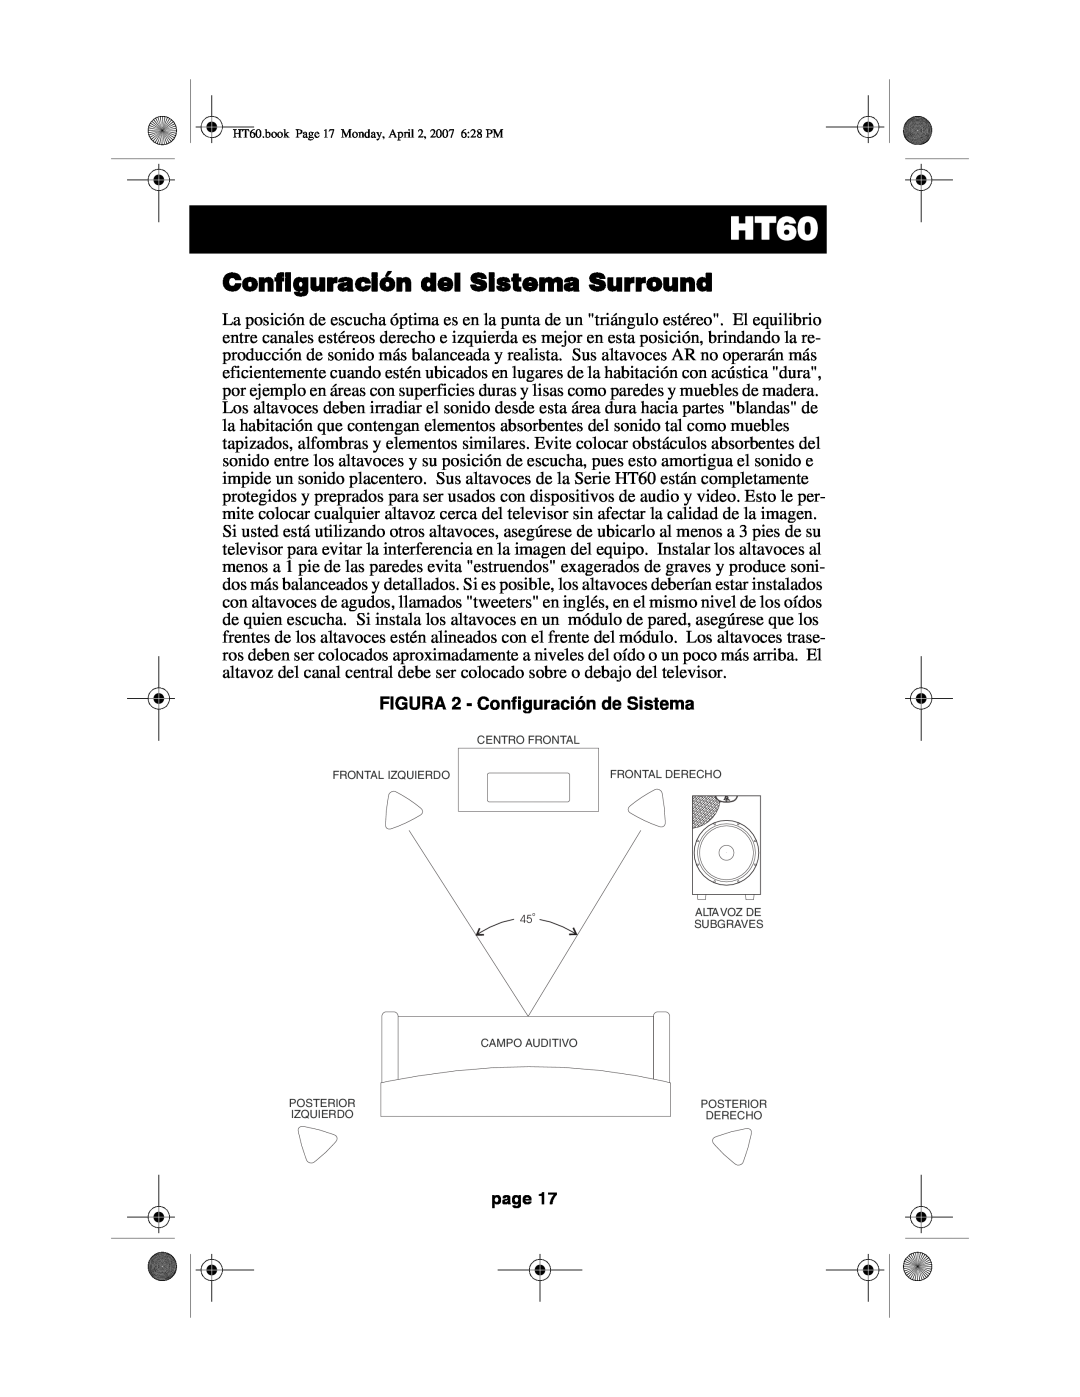 Acoustic Research HT60 operation manual Configuración del Sistema Surround, FIGURA 2 - Configuración de Sistema, page 